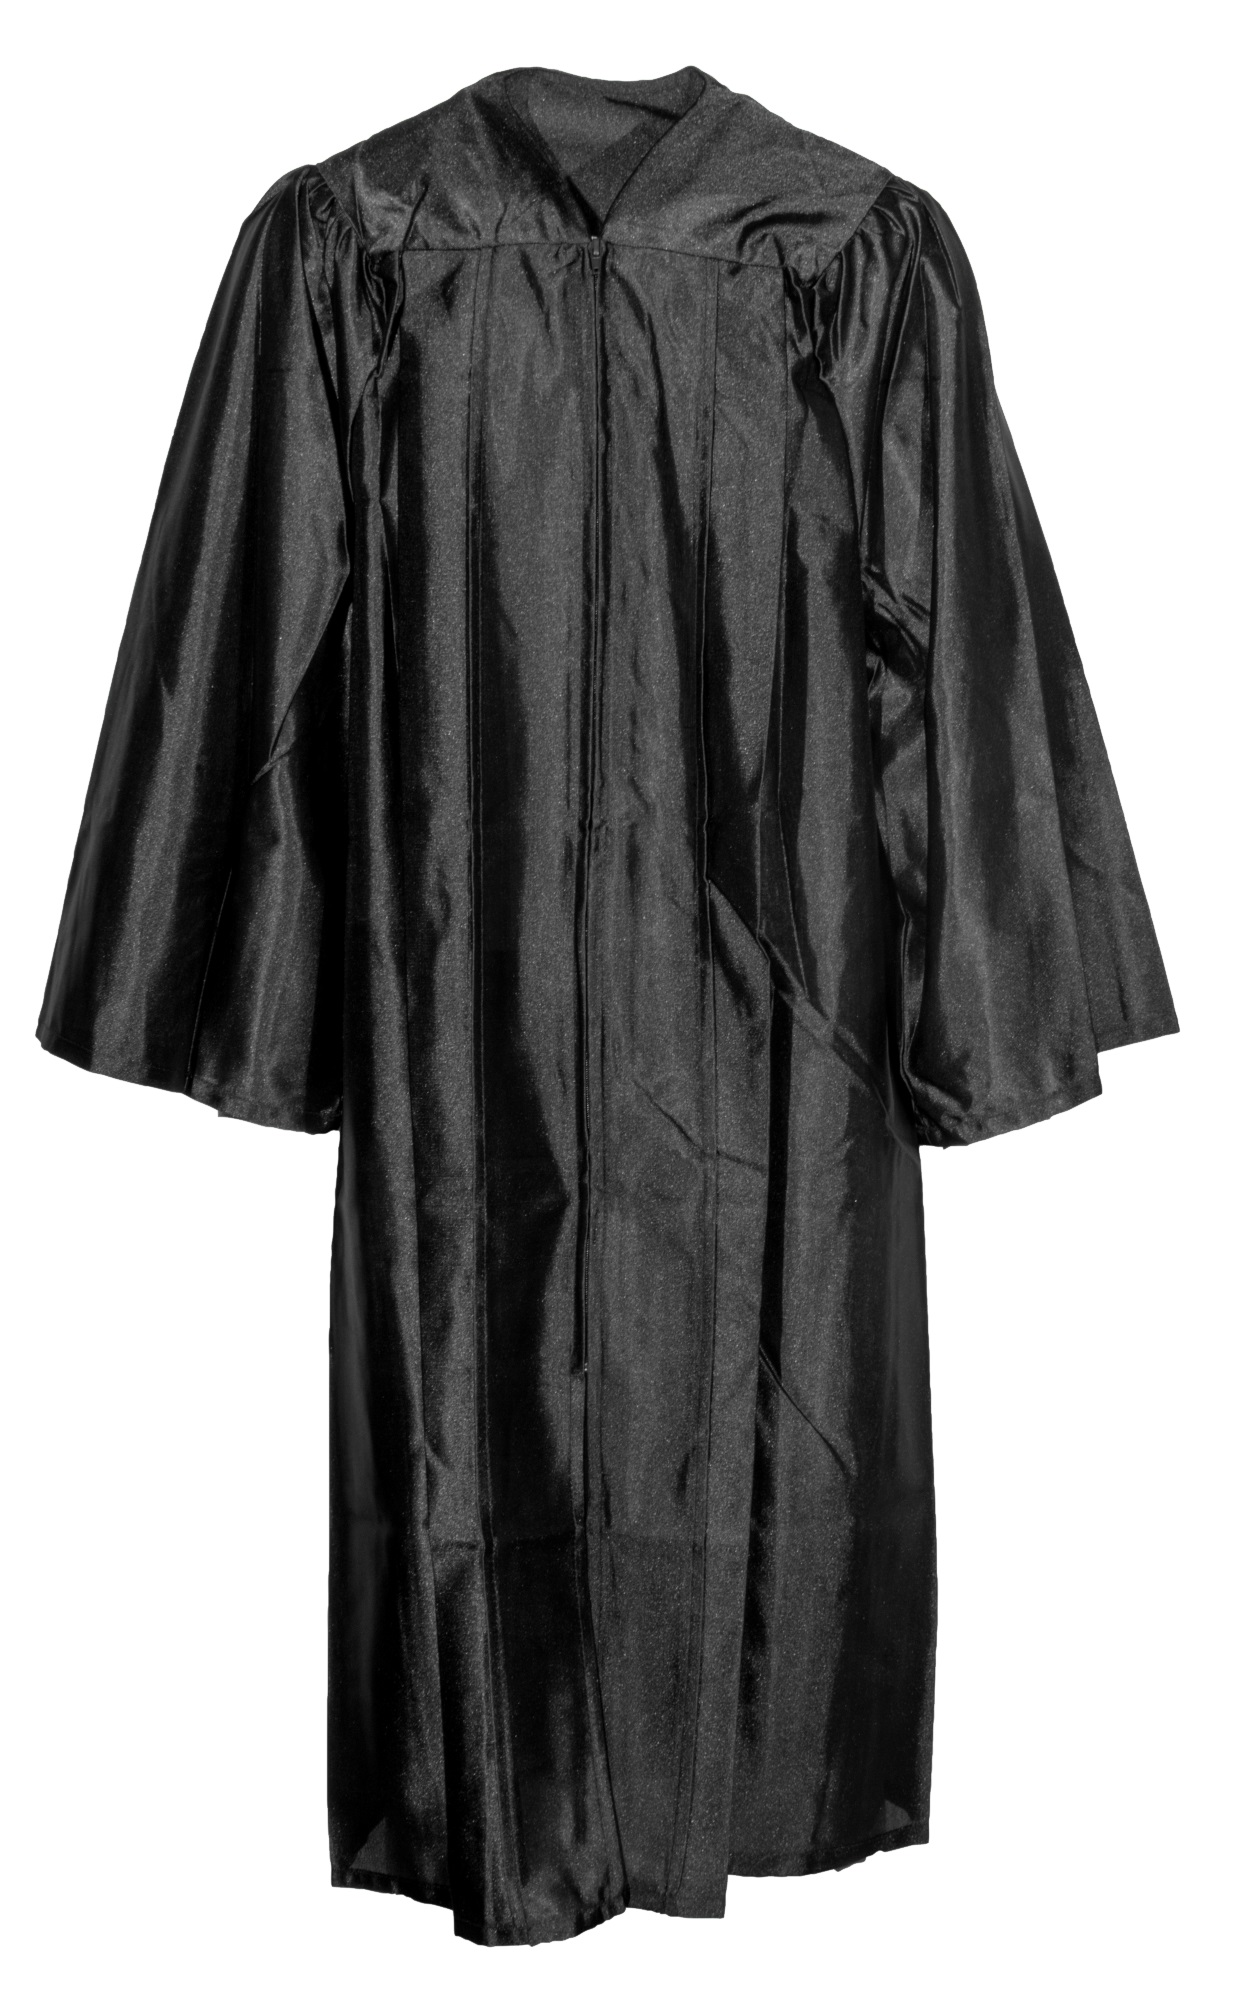 Robe Graduation Gown Mil schwarz